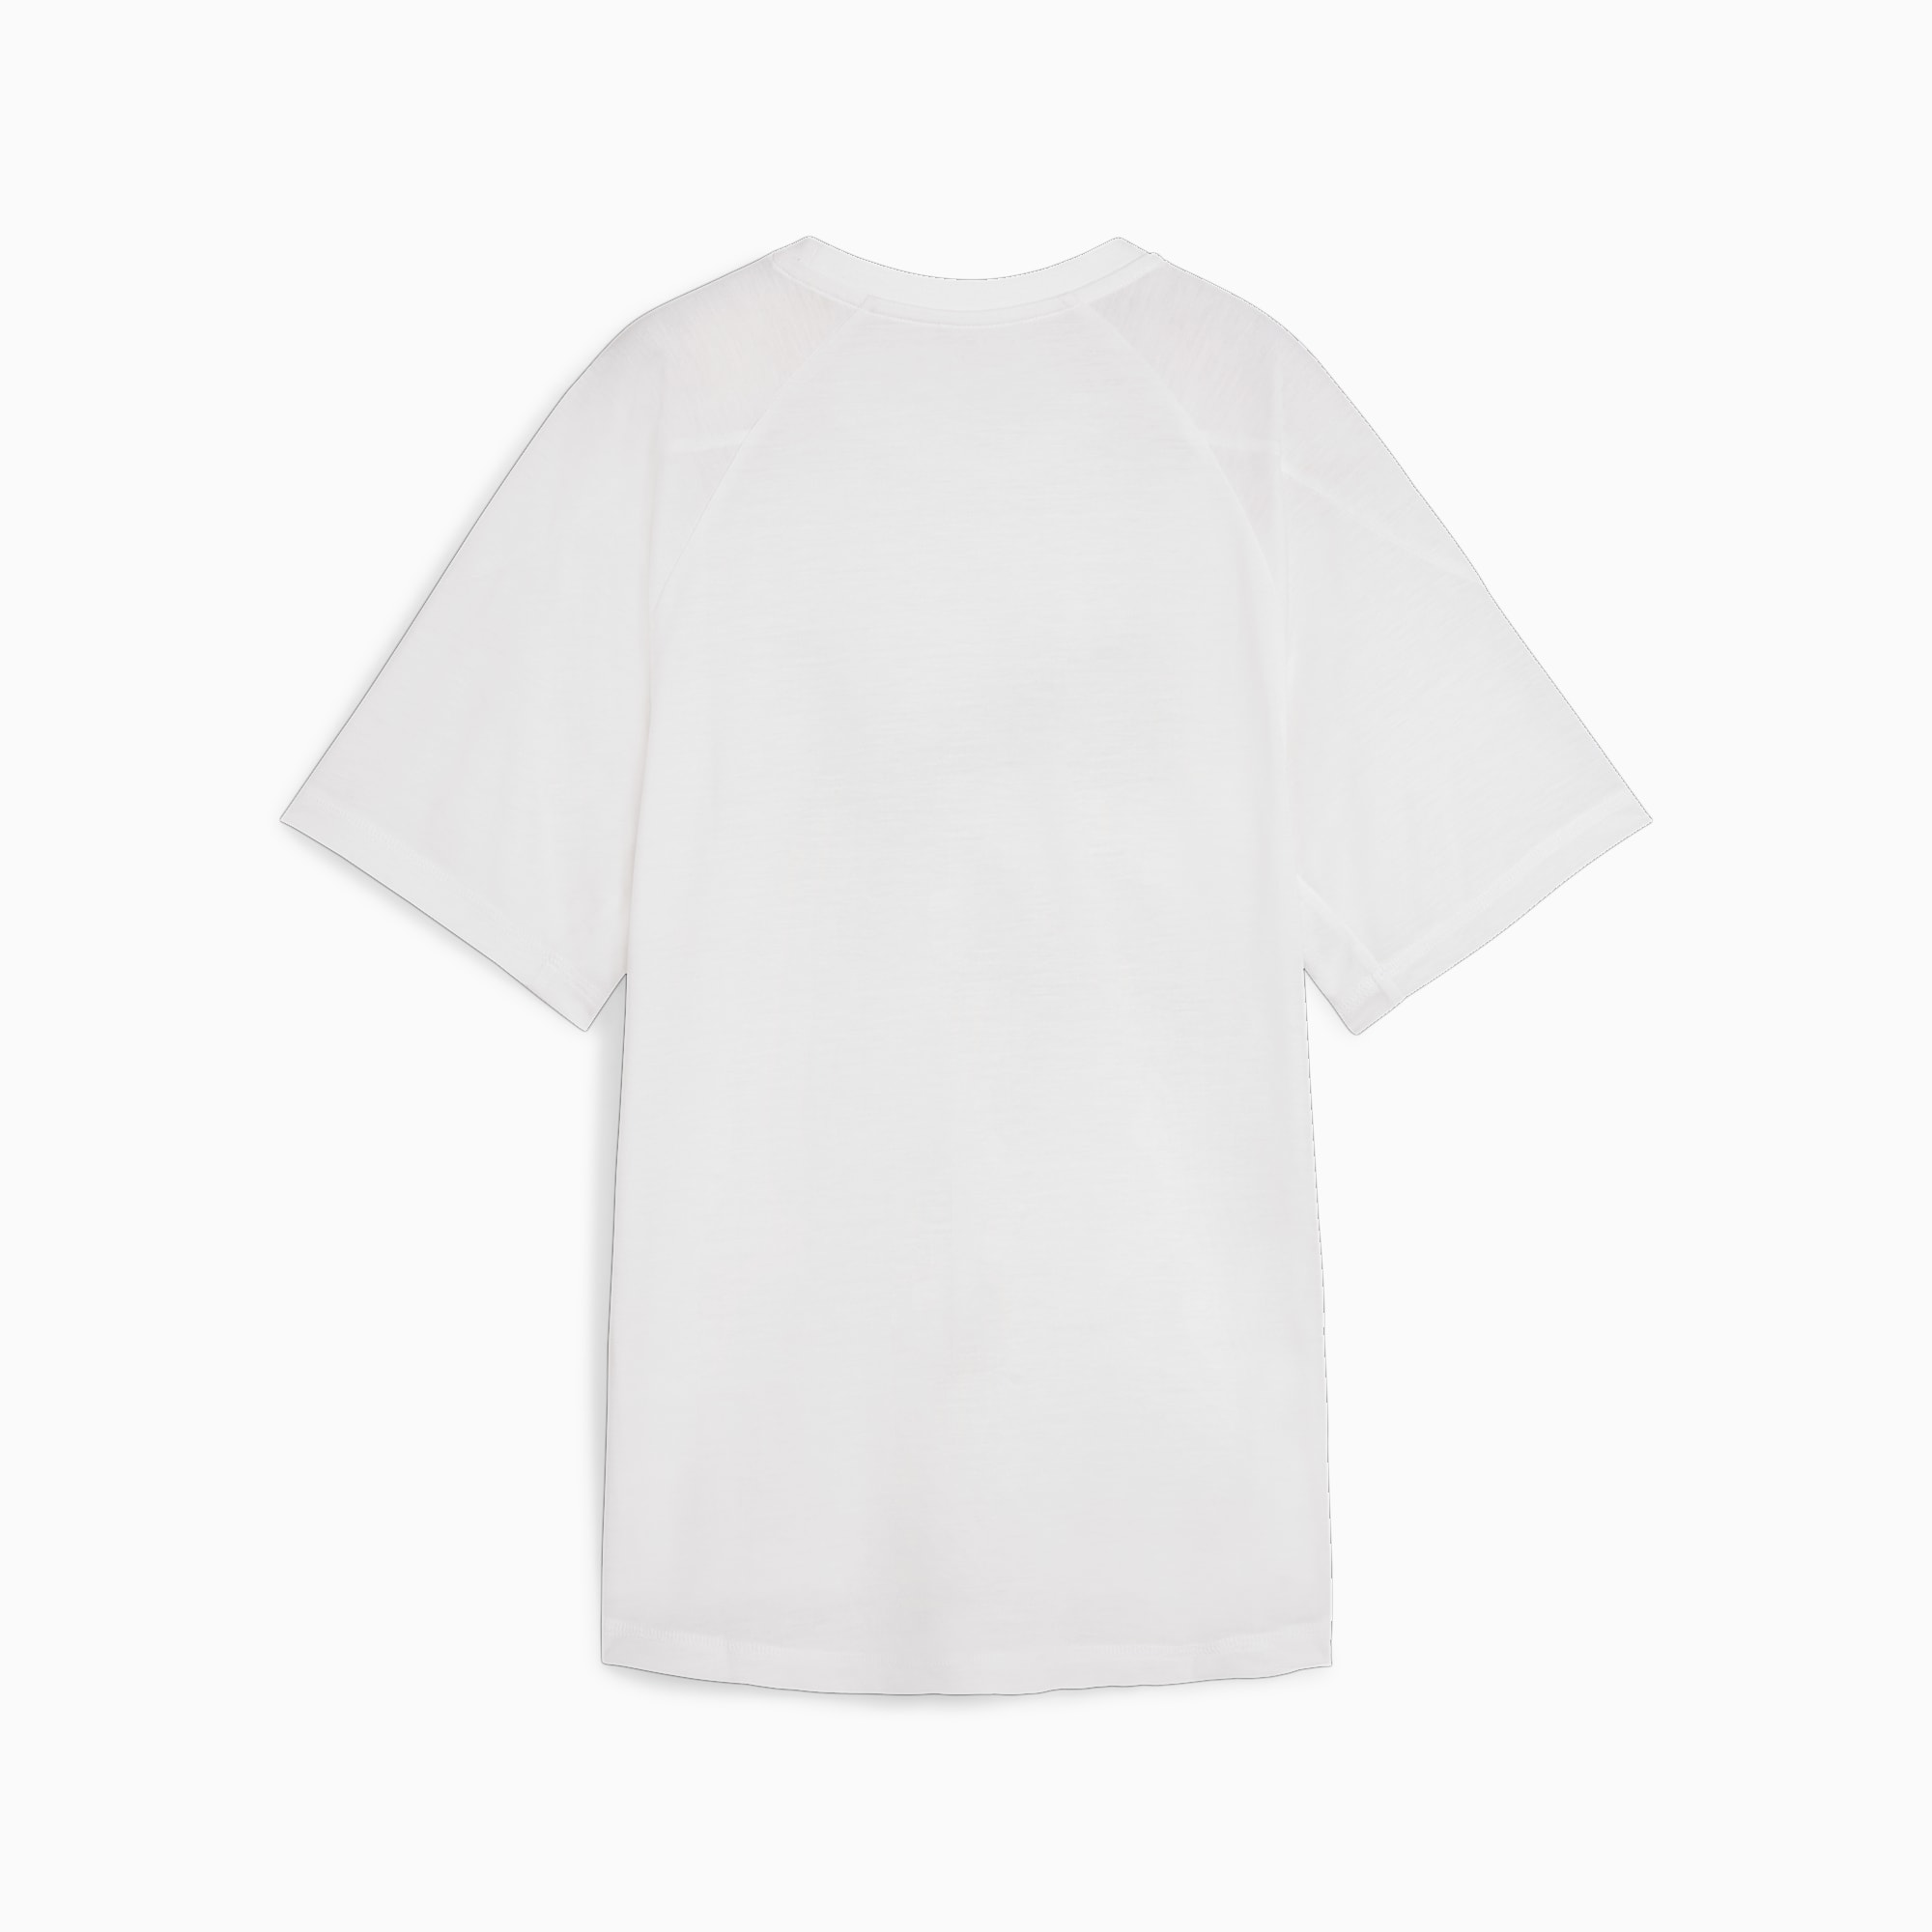 PUMA Evostripe Women's Graphic T-Shirt, White, Size L, Clothing